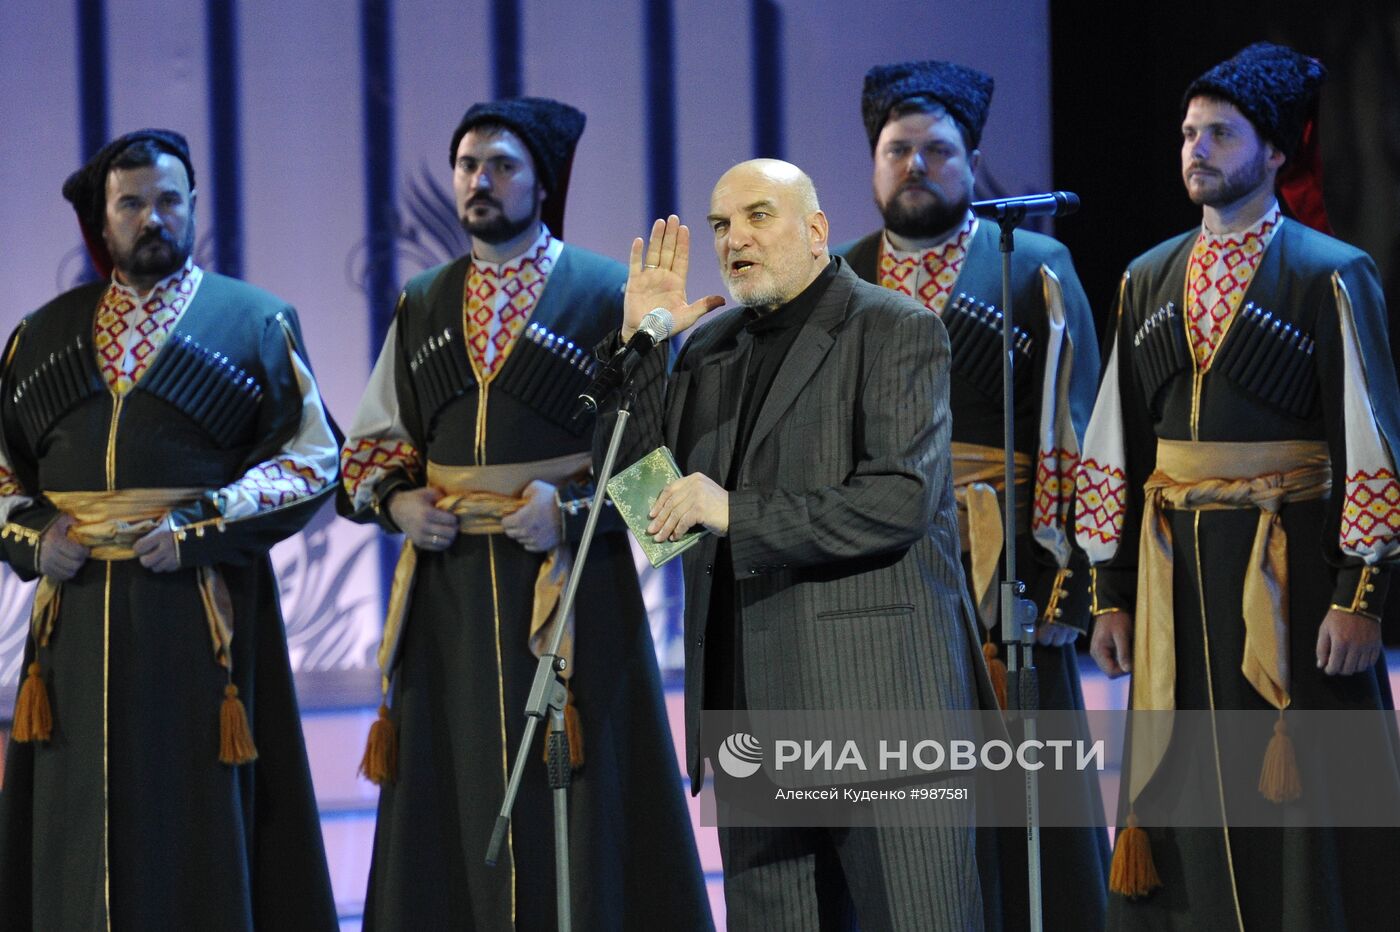 Юбилейный концерт Кубанского казачьего хора в Кремлевском дворце